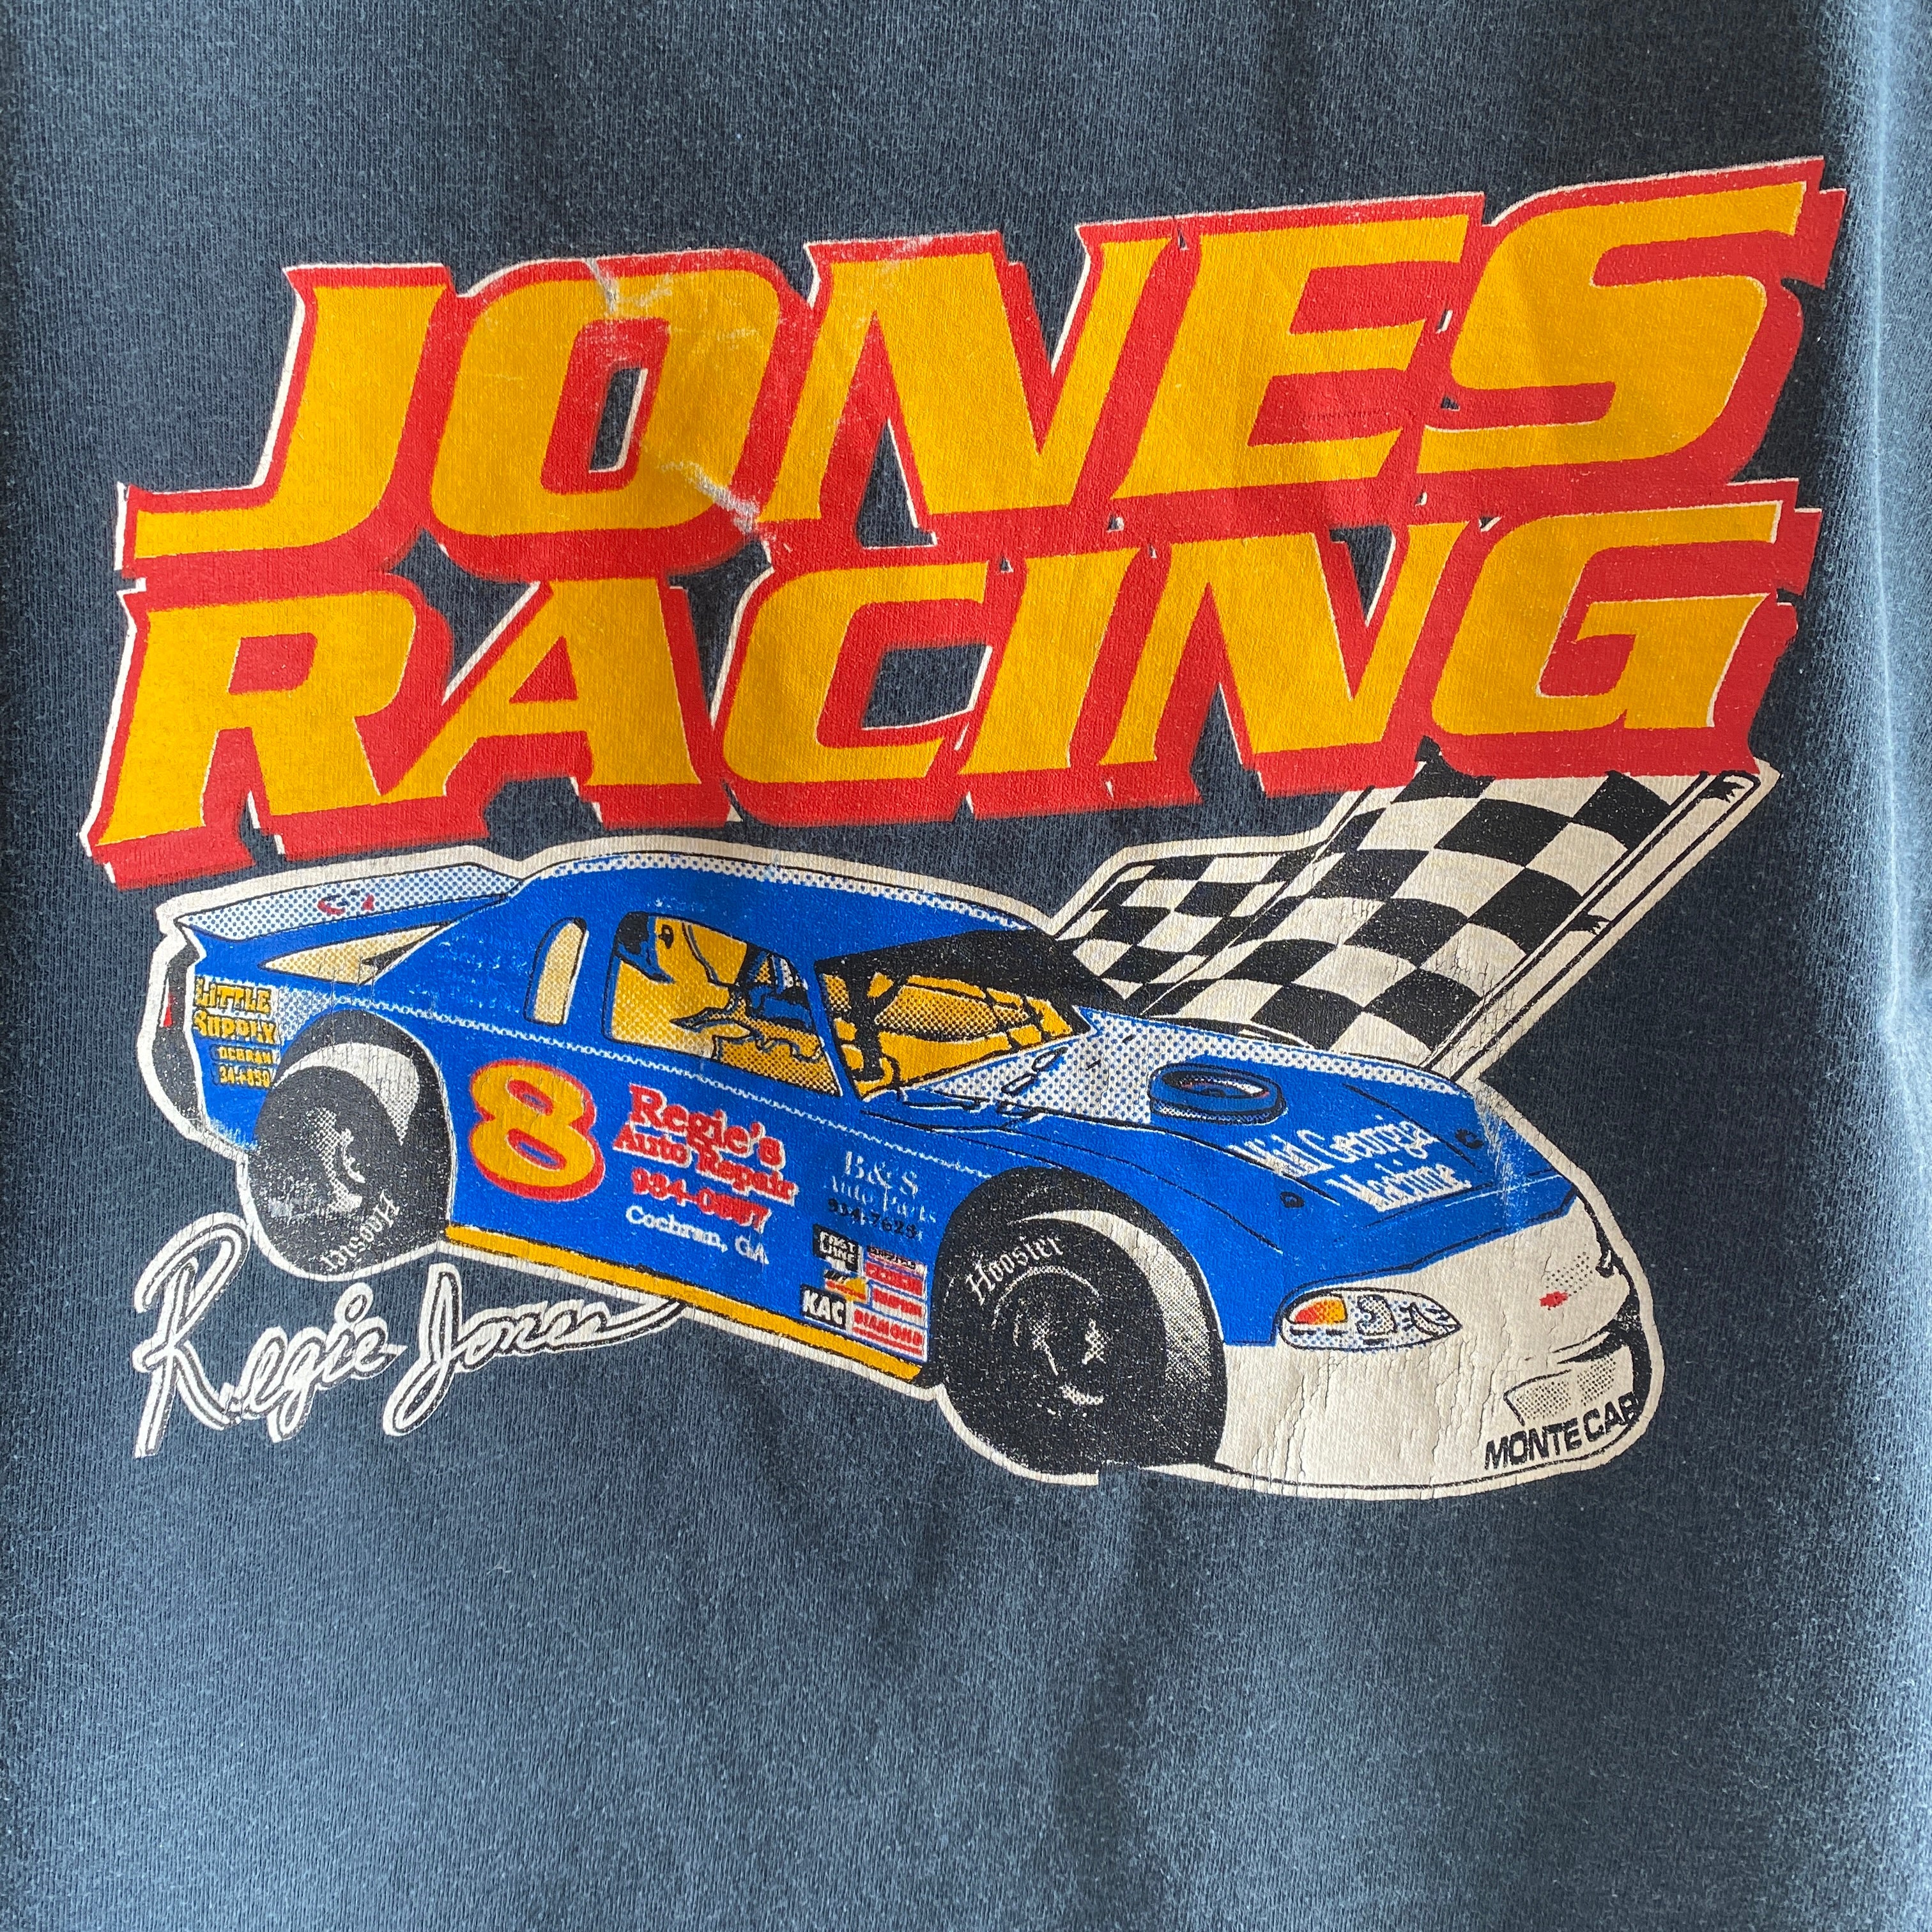 1990s Jones Racing Tank Top - Rad!!